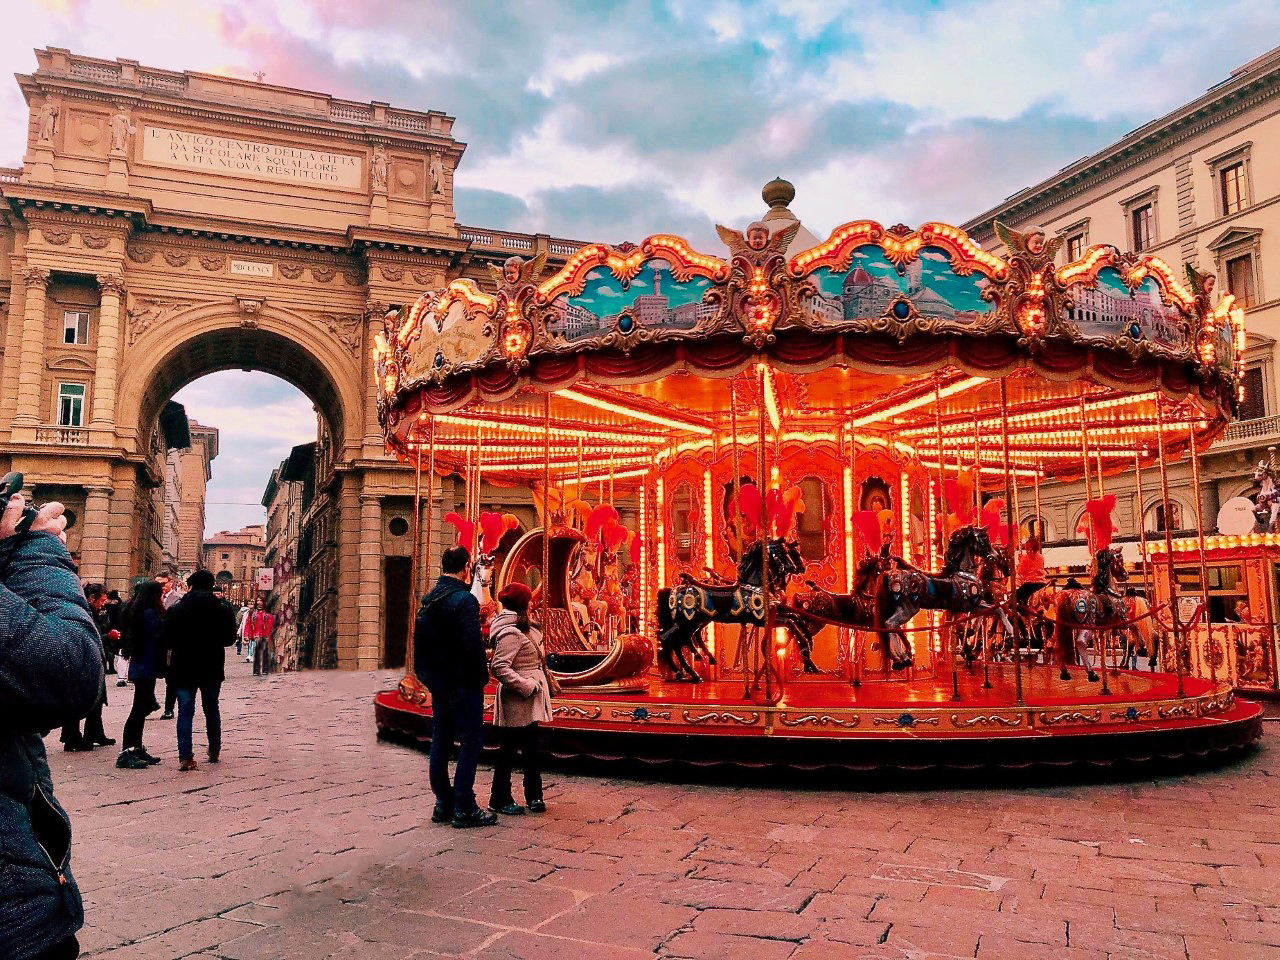 A carousel in the Piazza della Repubblica.